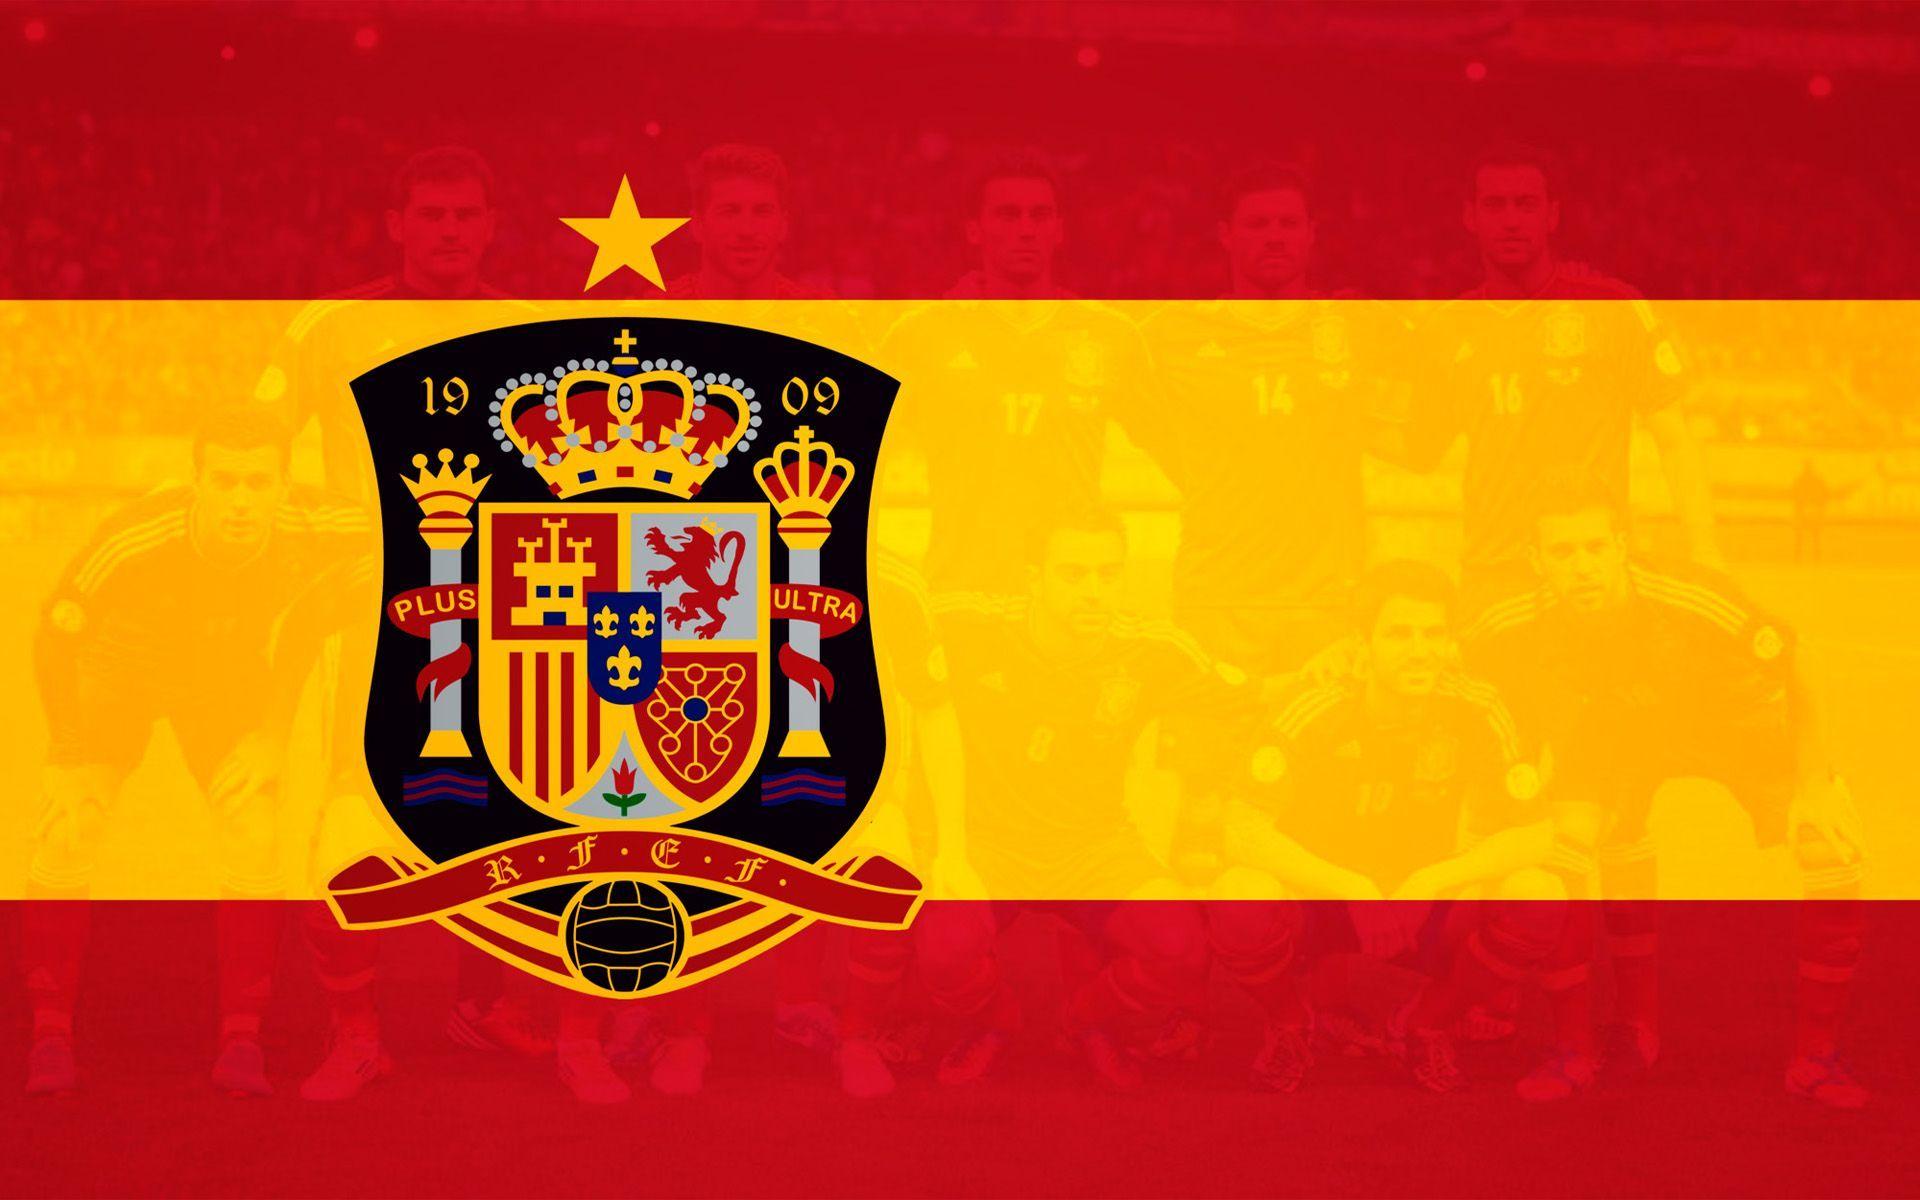 Spain soccer logo wallpapers